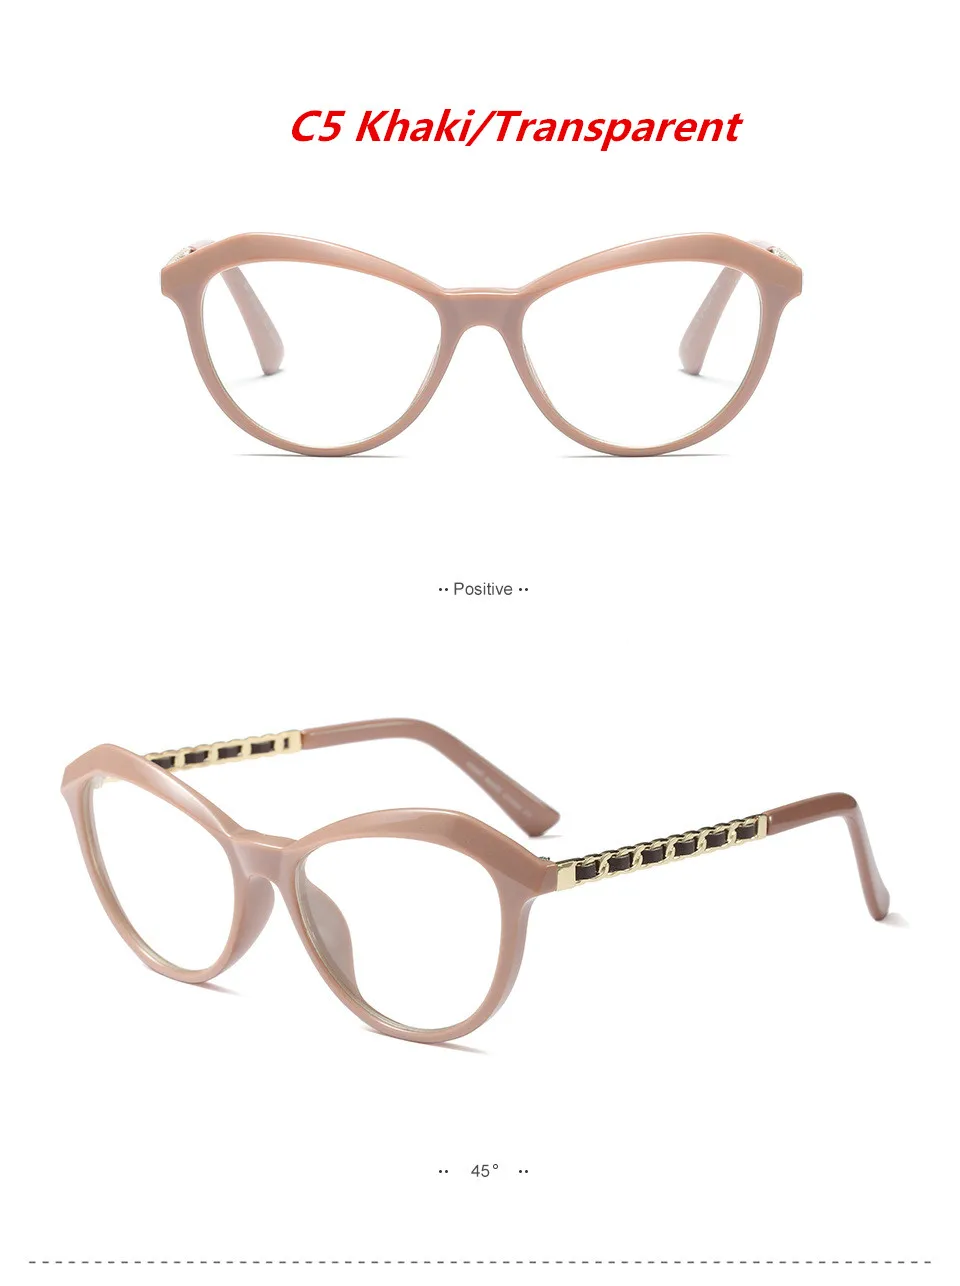 HUITUO Мода стиль Кошачий глаз прозрачная оправа для очков для женщин прозрачные компьютерные очки Ретро Индивидуальность плоская рамка - Цвет оправы: C5